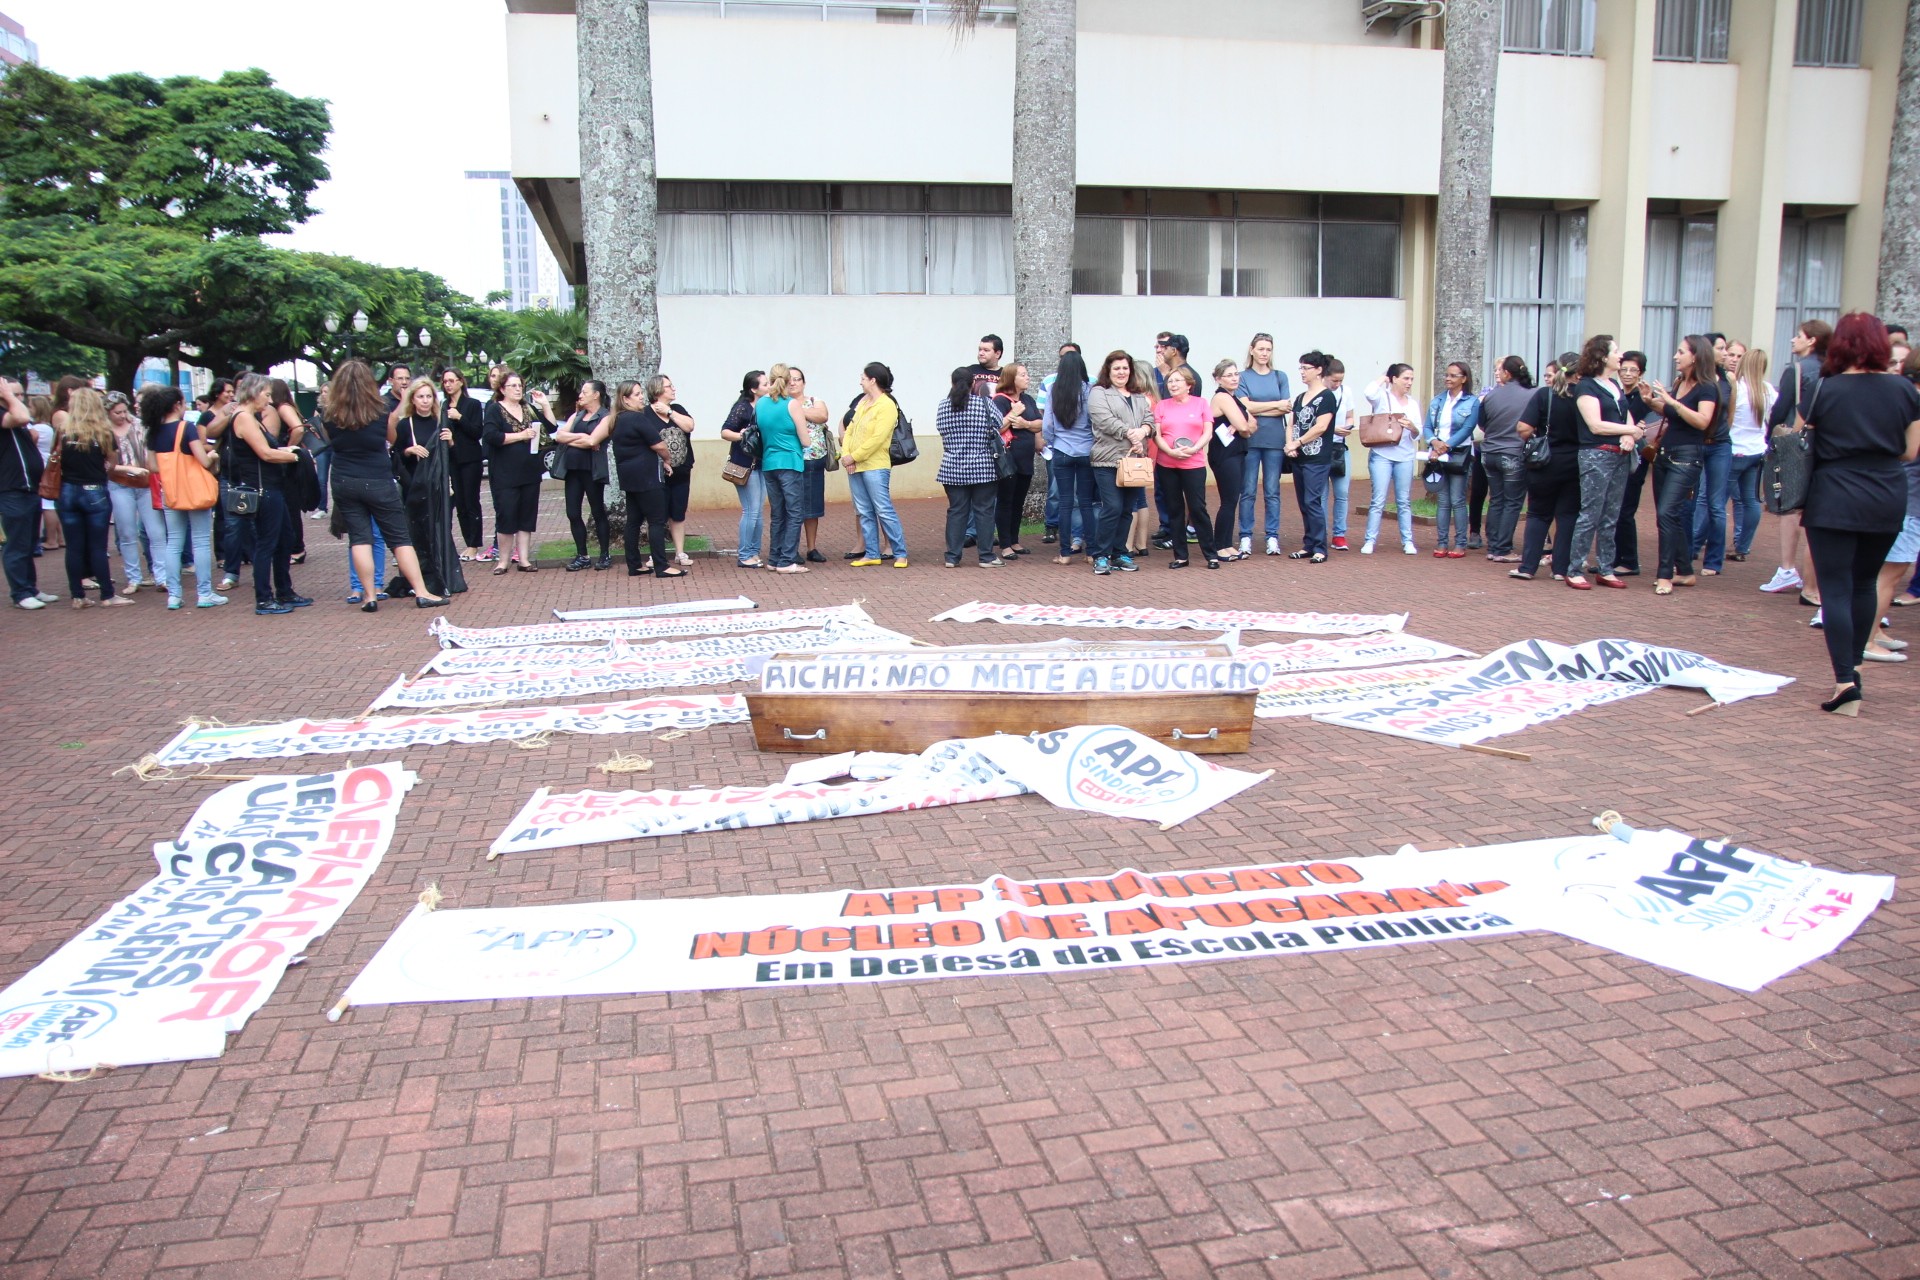 Até um "caixão" foi levado para a manifestação, simbolizando "velório" da Educação no Paraná - Foto: Dirceu Lopes